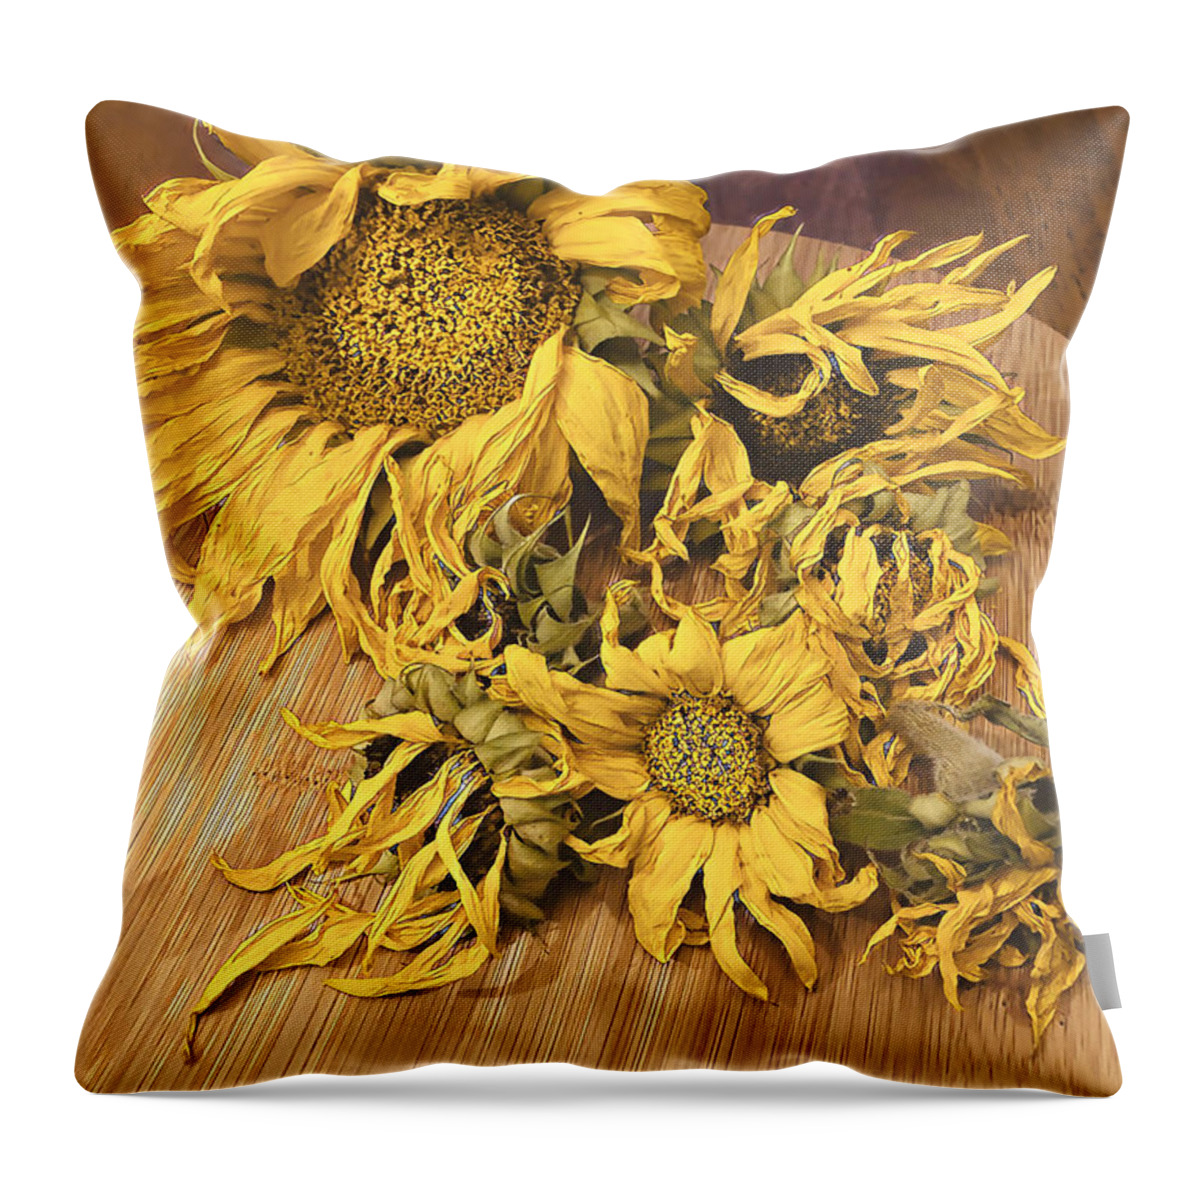 Sunflowers Throw Pillow featuring the digital art Seasons End by Juliette Becker